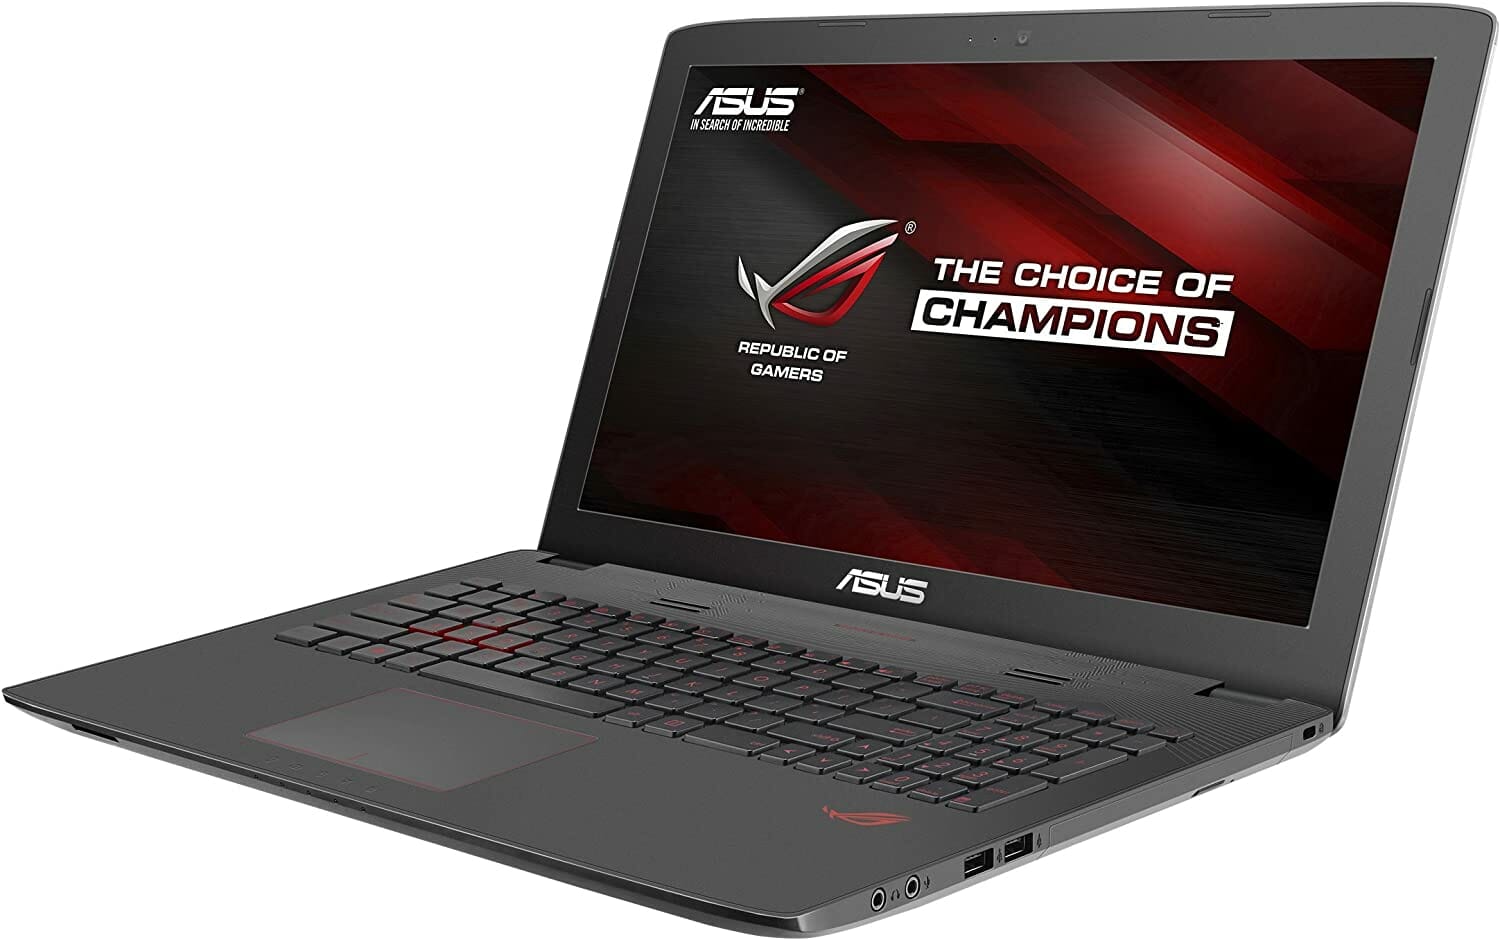  ASUS ROG GL752VW-DH71 17.3-inch Gaming Laptop